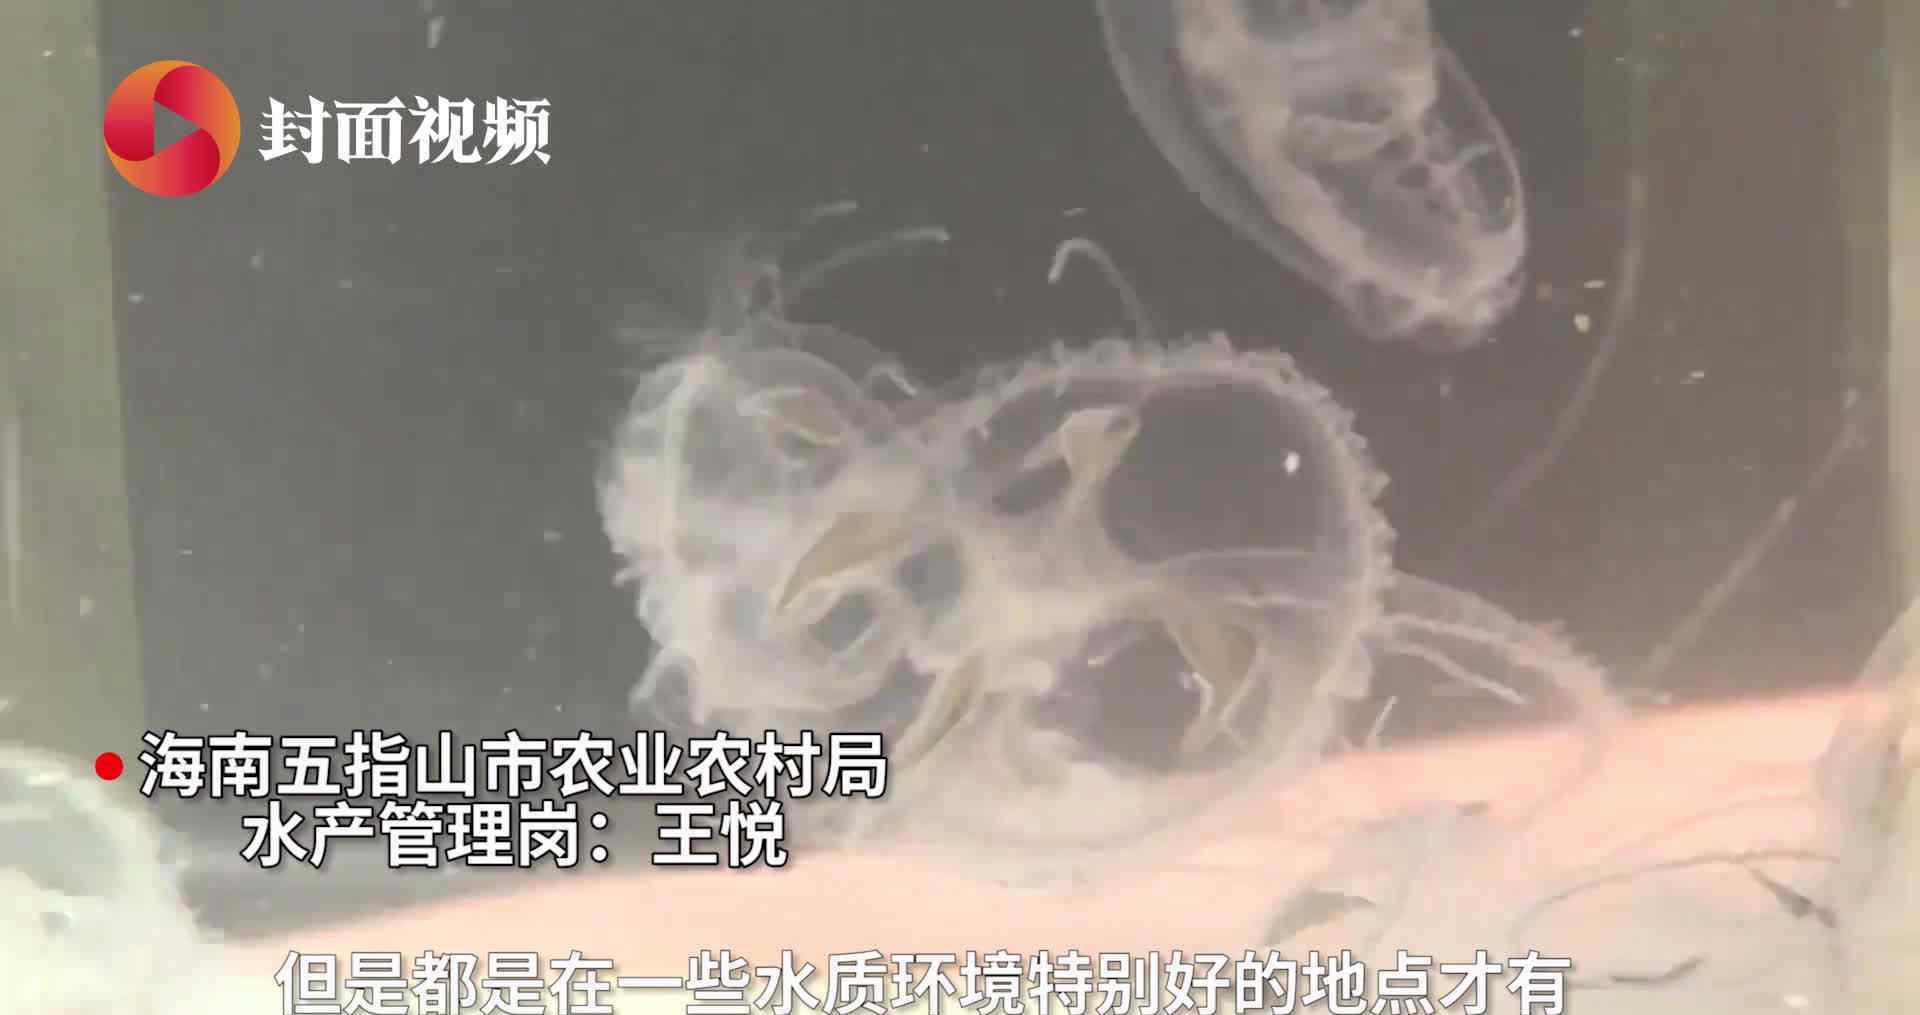 海南农家水井出现大量桃花水母 现场画面曝光为世界级濒危物种